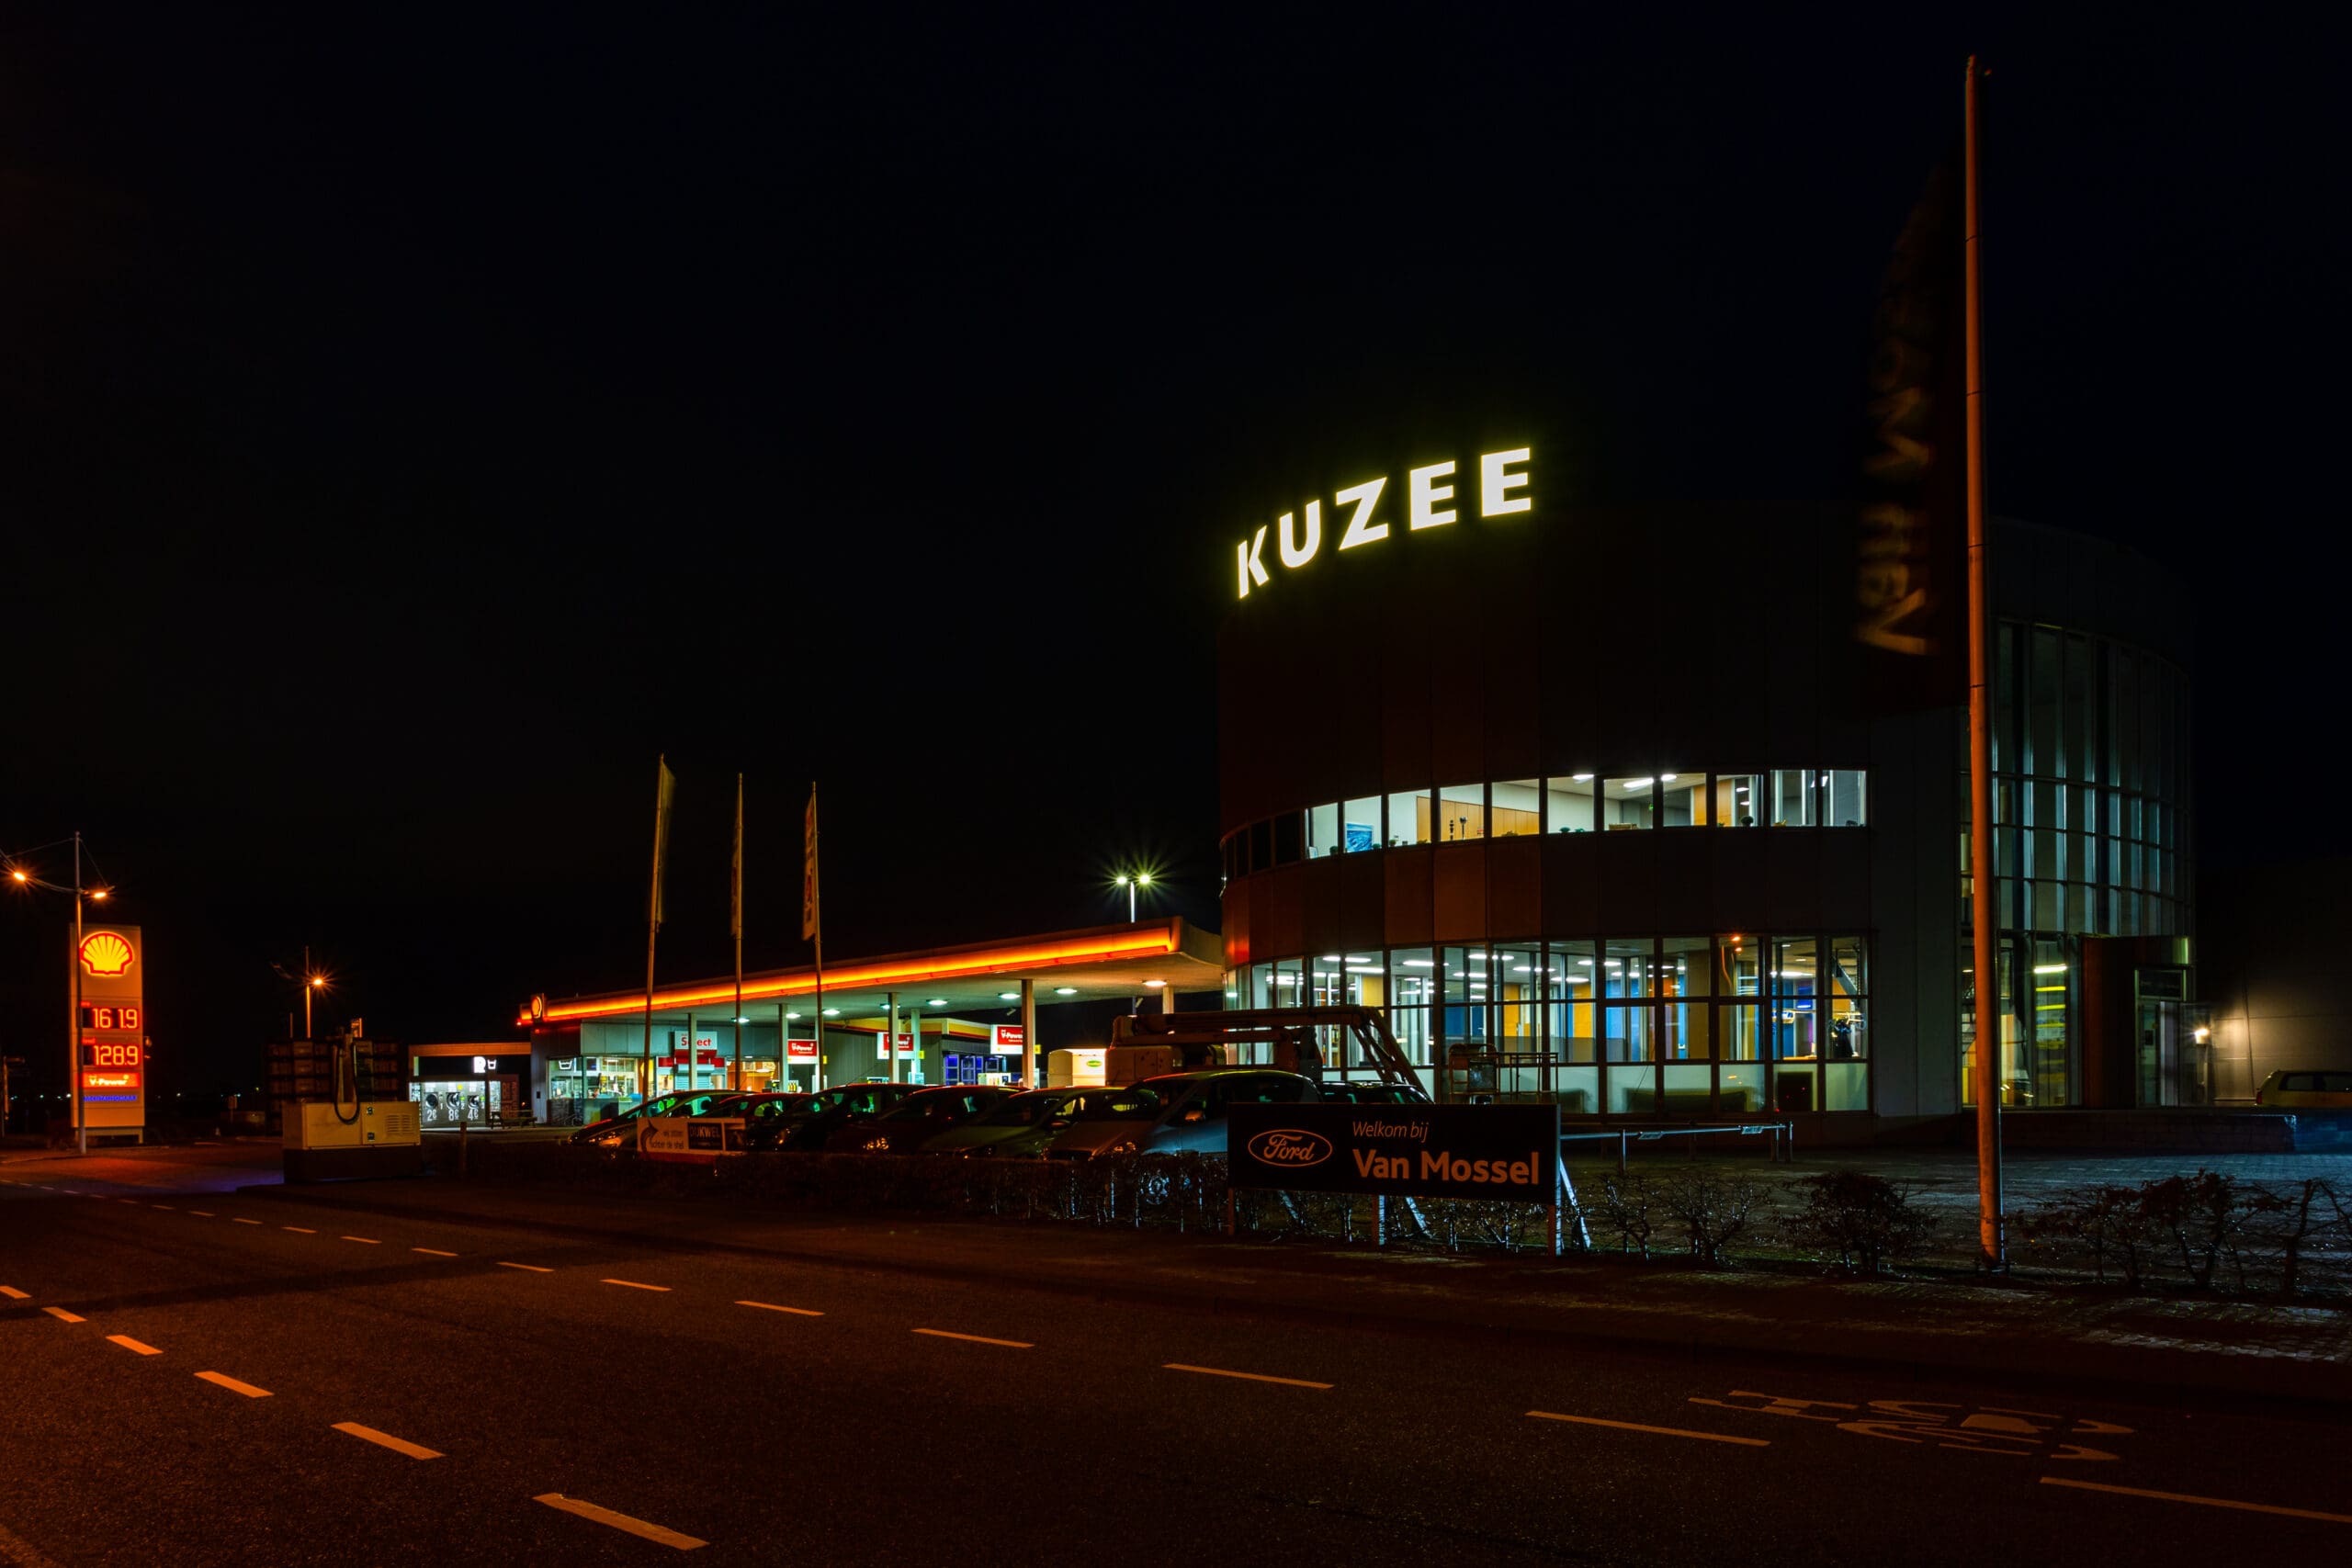 Lichtreclame Kuzee bij nacht